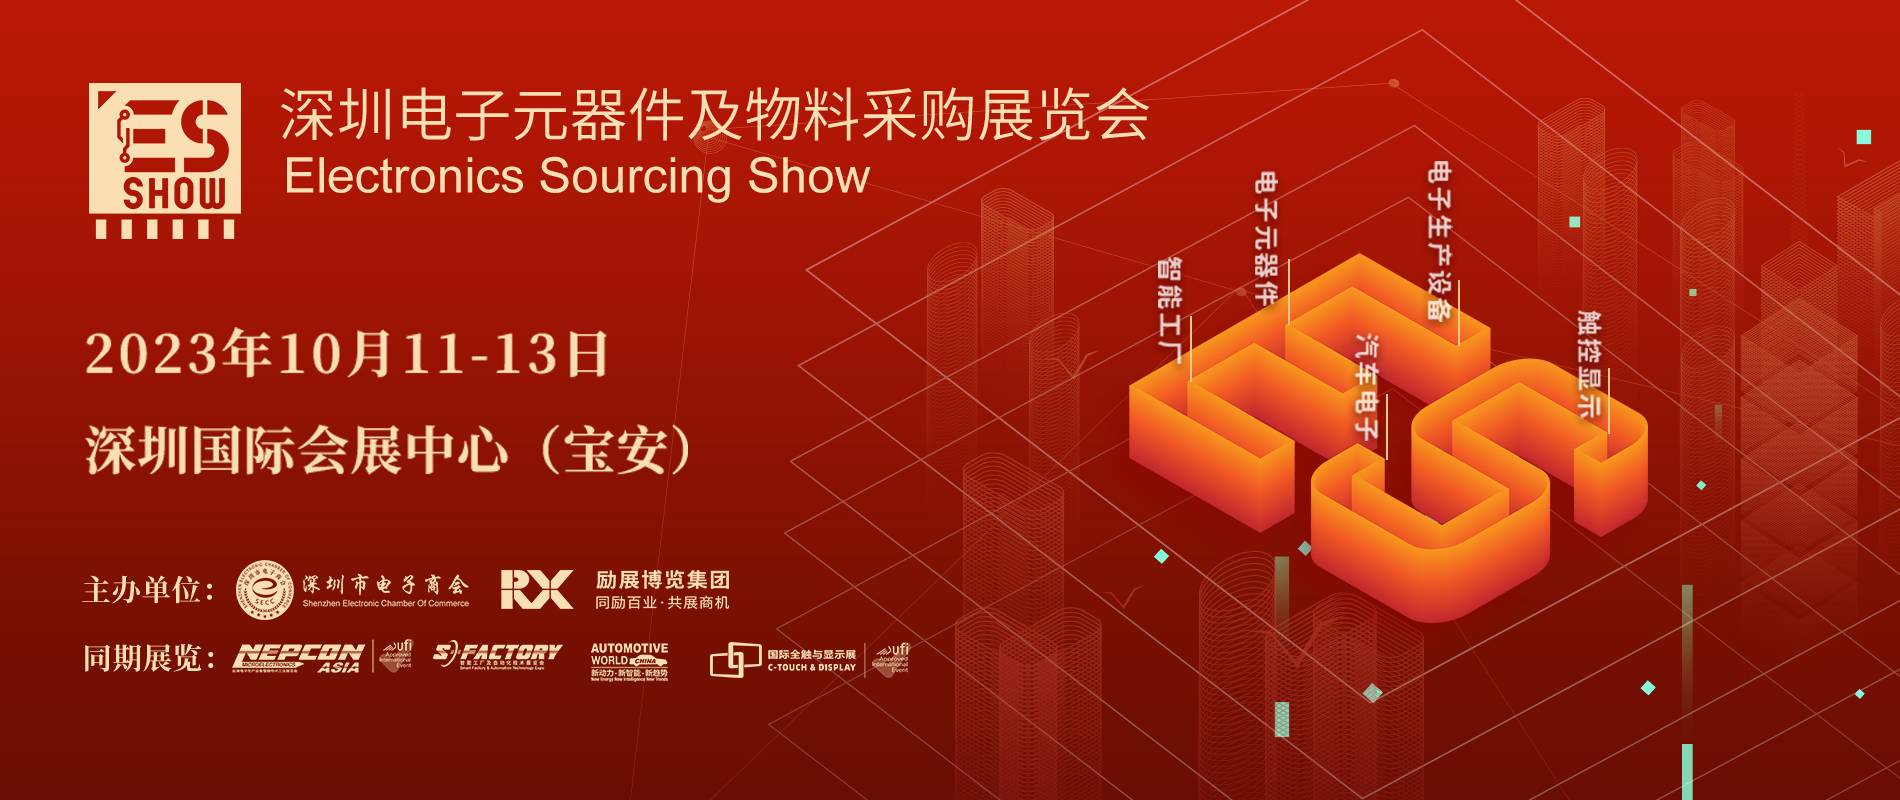 中国电子展 ESSHOW 碳化硅 SiC 深圳电子展